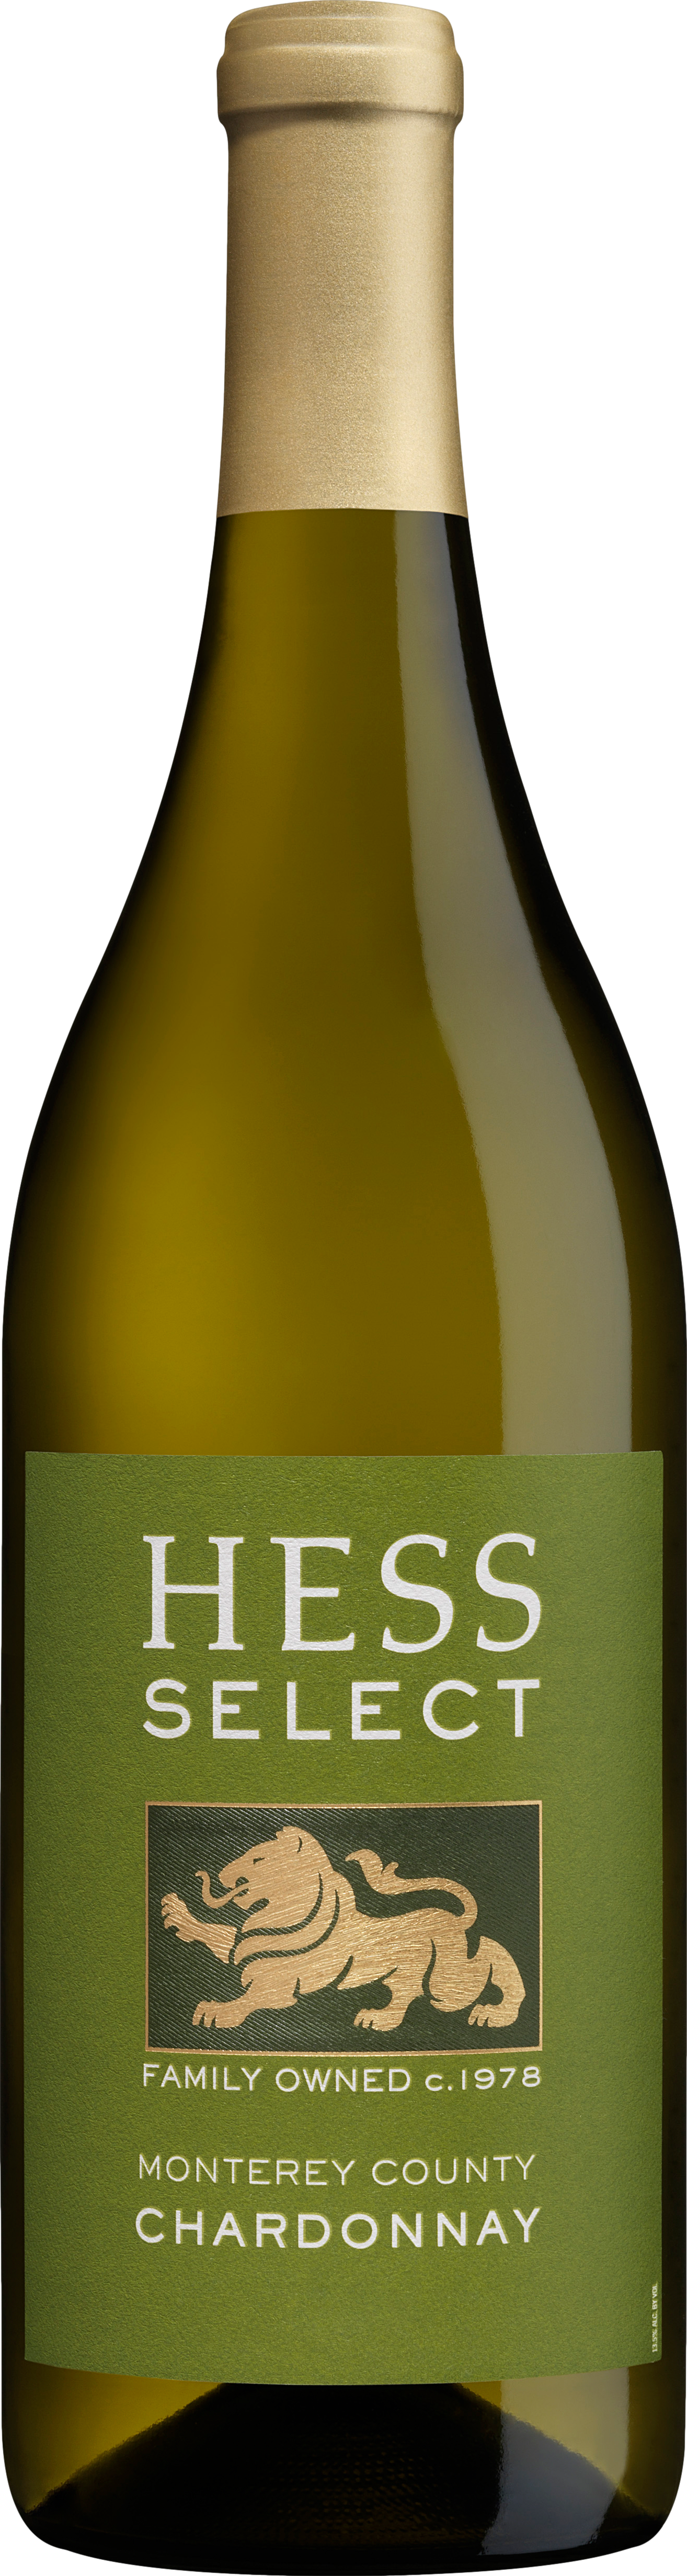 Hess Collection Select Chardonnay 2018